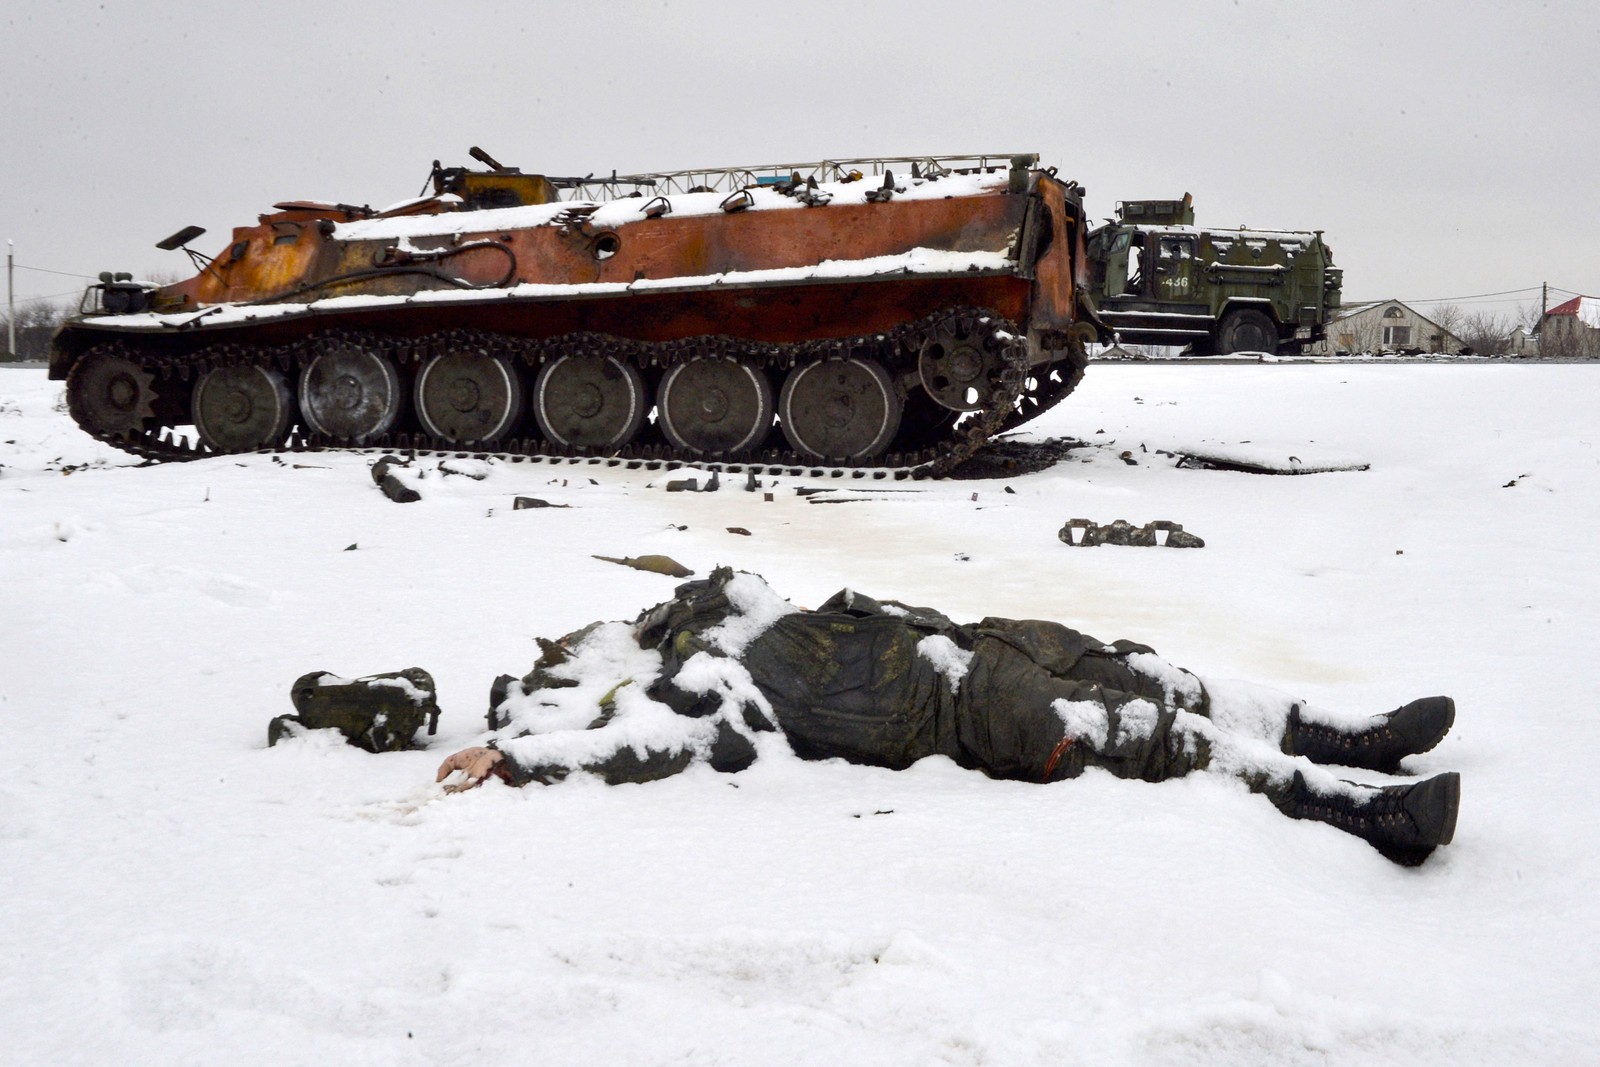 Corpo de um militar russo fica encoberto pela neve, próximo a veículos militares russos destruídos na beira da estrada nos arredores de Kharkiv — Foto: SERGEY BOBOK / AFP